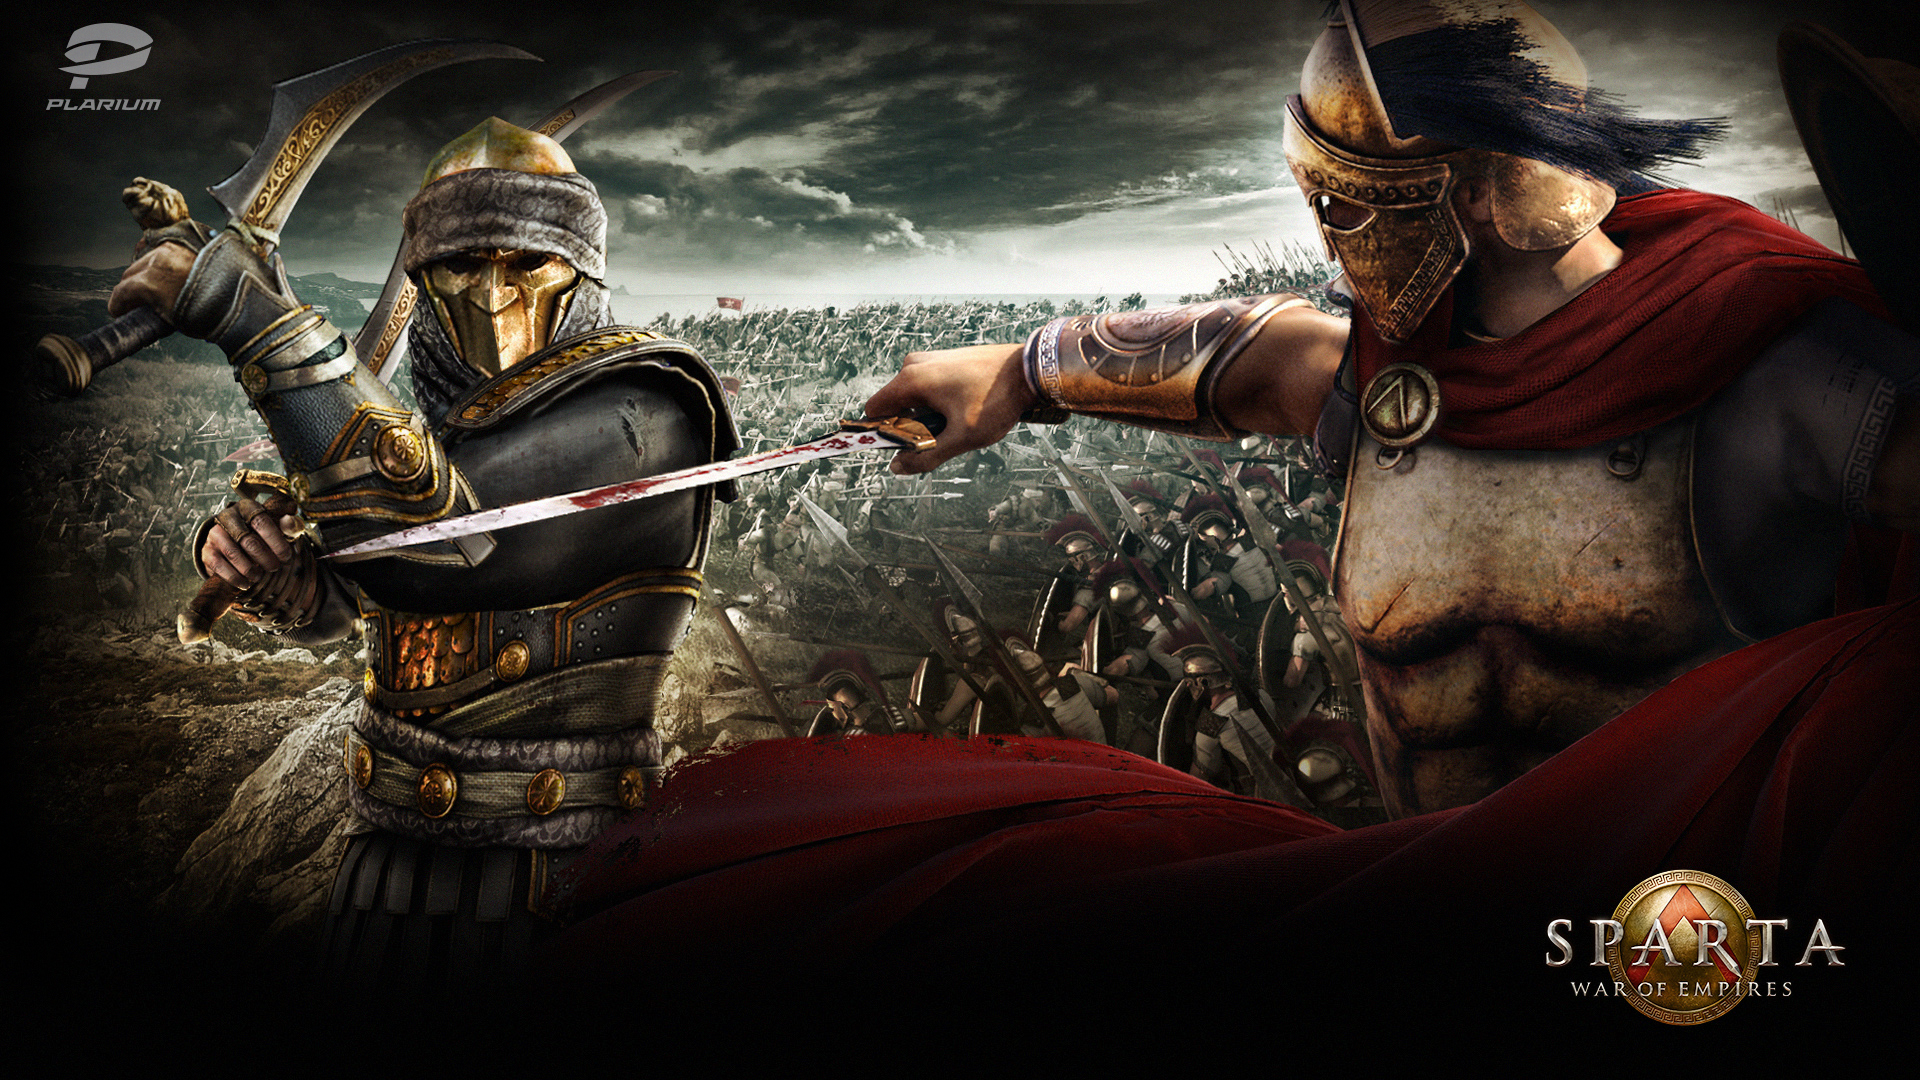 Sparta War of Empires wallpaper 6 1920x1080